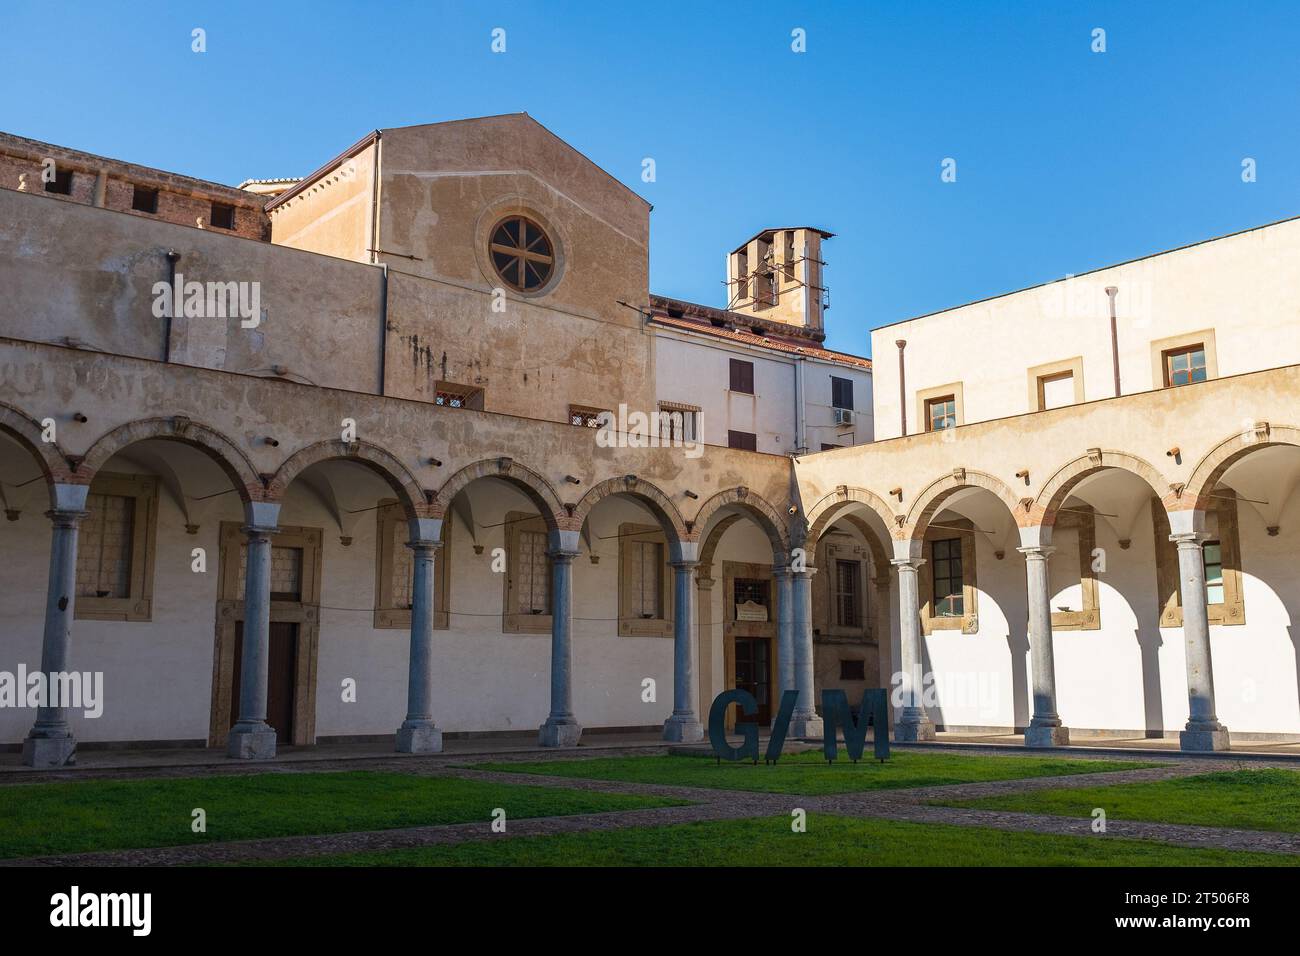 Palermo, Sicilia, 2016. El jardín de la Galleria d'Arte Moderna situado en el antiguo claustro del convento franciscano de Sant'Anna allá Misericordia Foto de stock